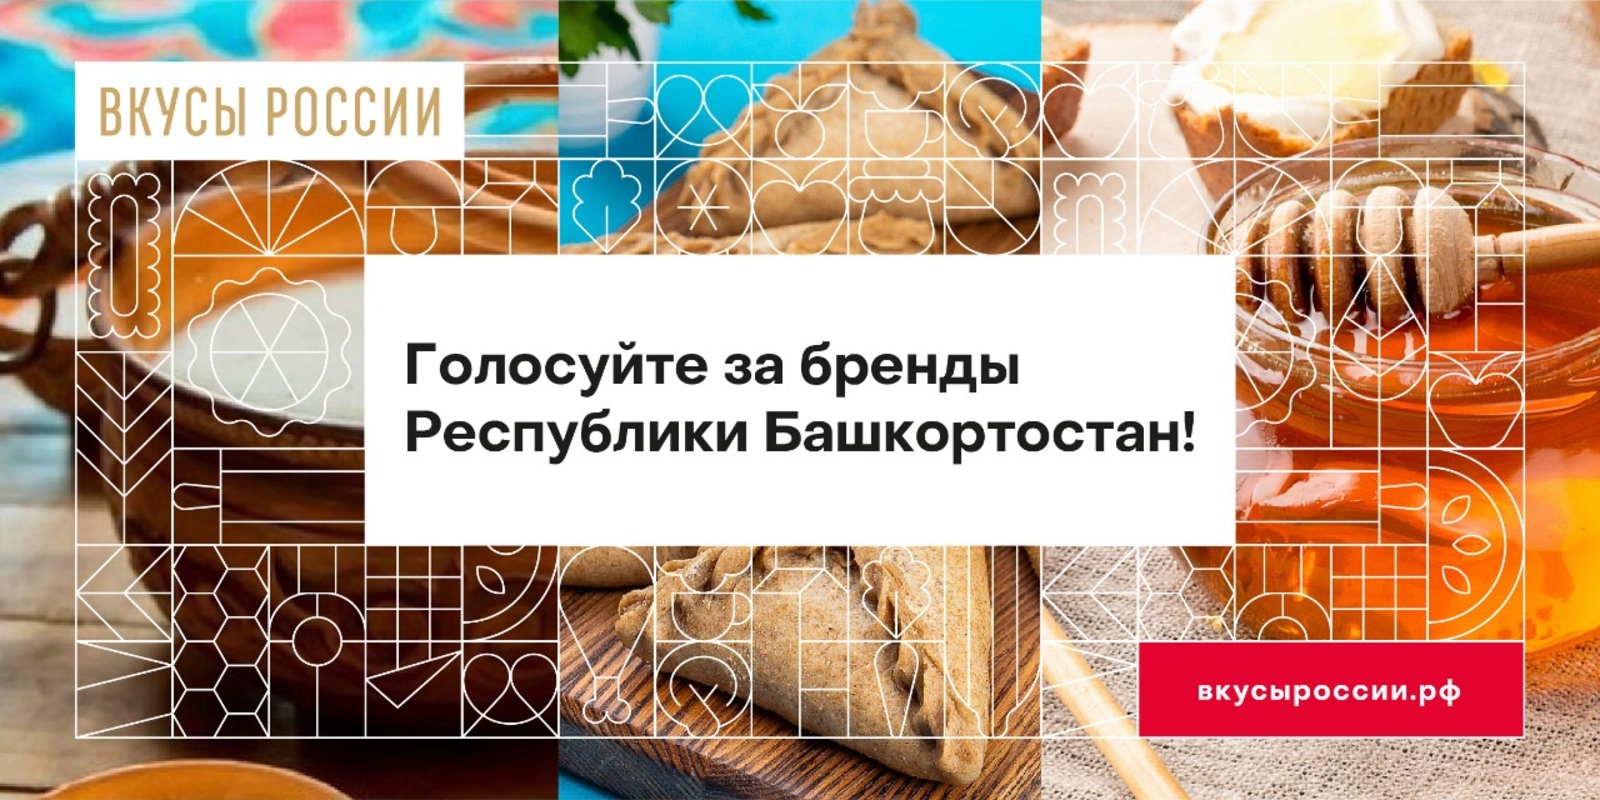 Поддержим башкирские бренды: до конца голосования на конкурсе «Вкусы России» несколько дней